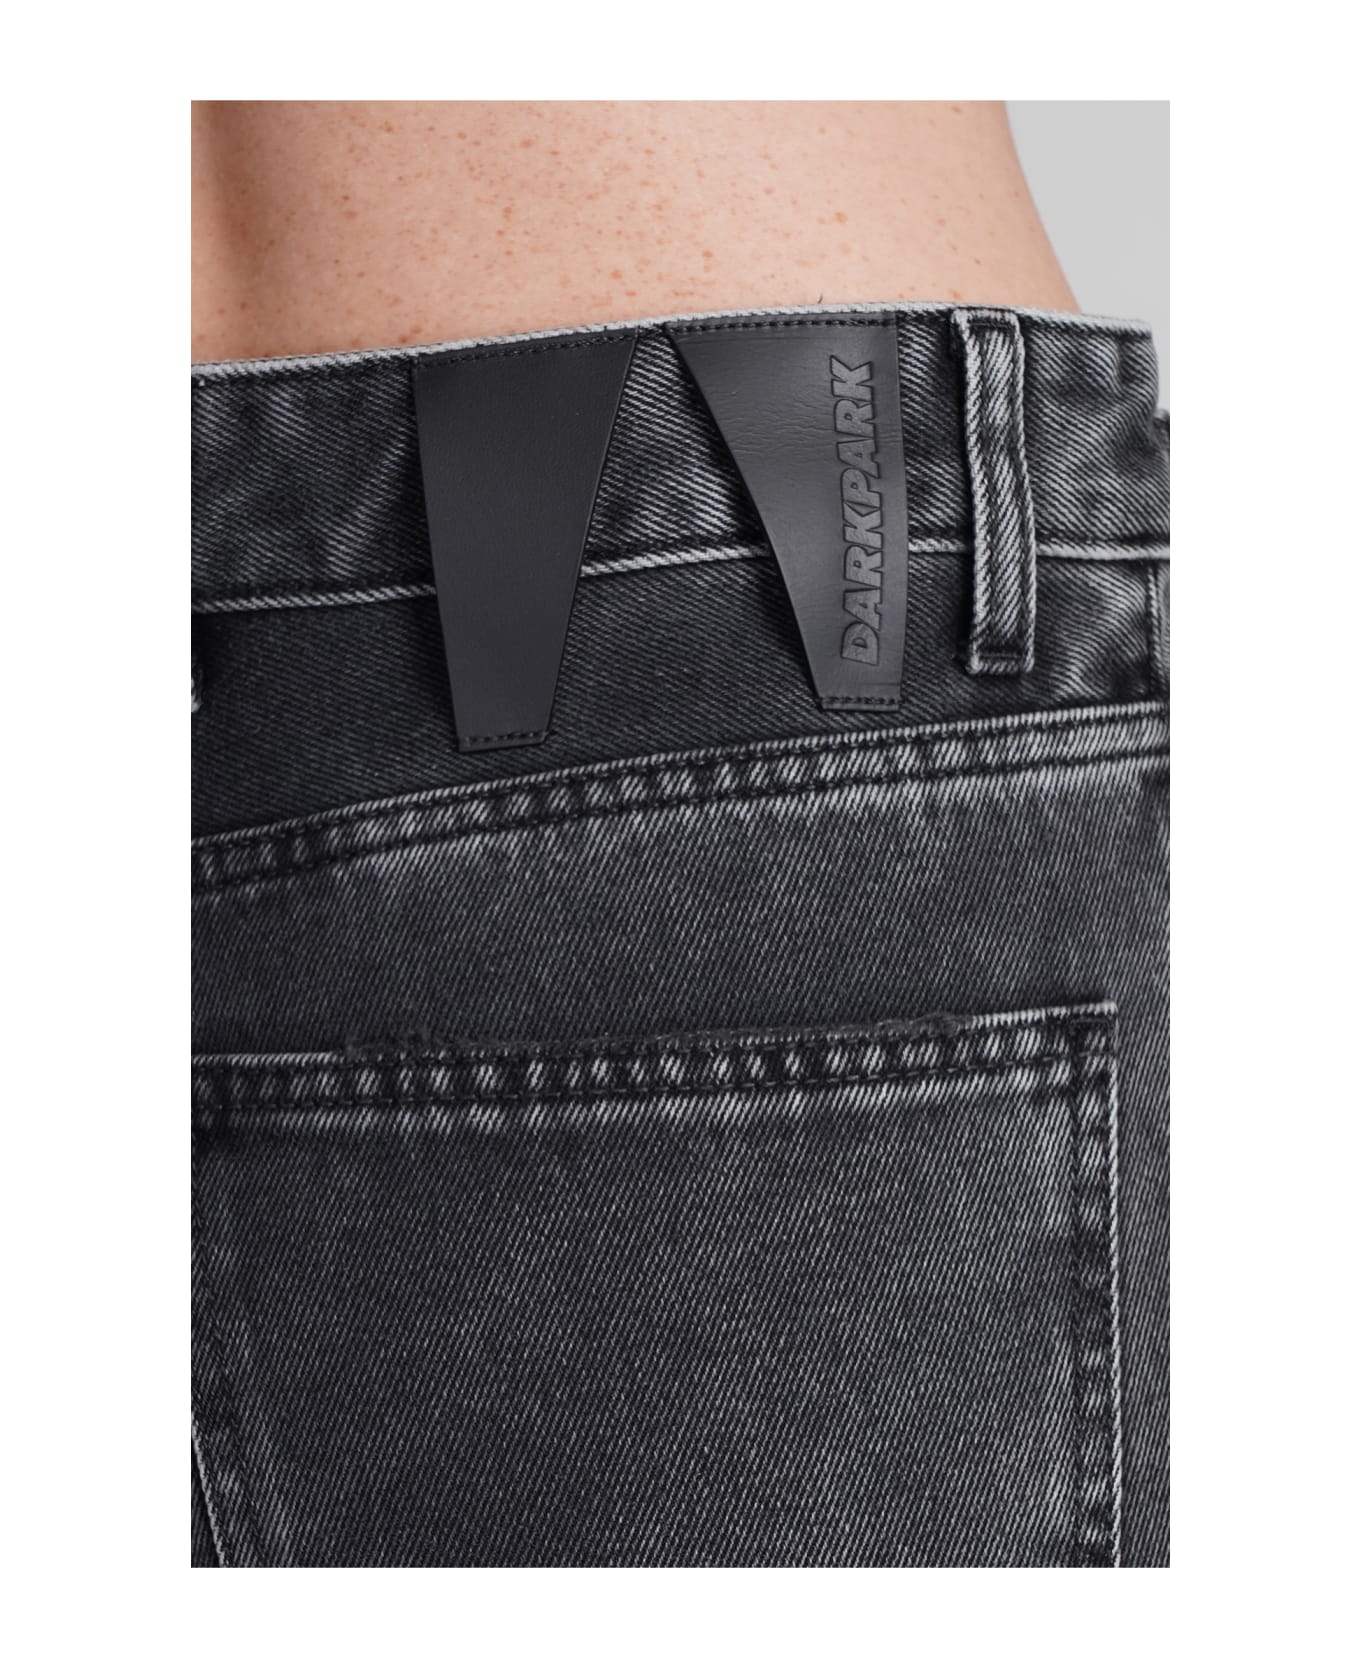 DARKPARK Karen Jeans In Black Cotton - black